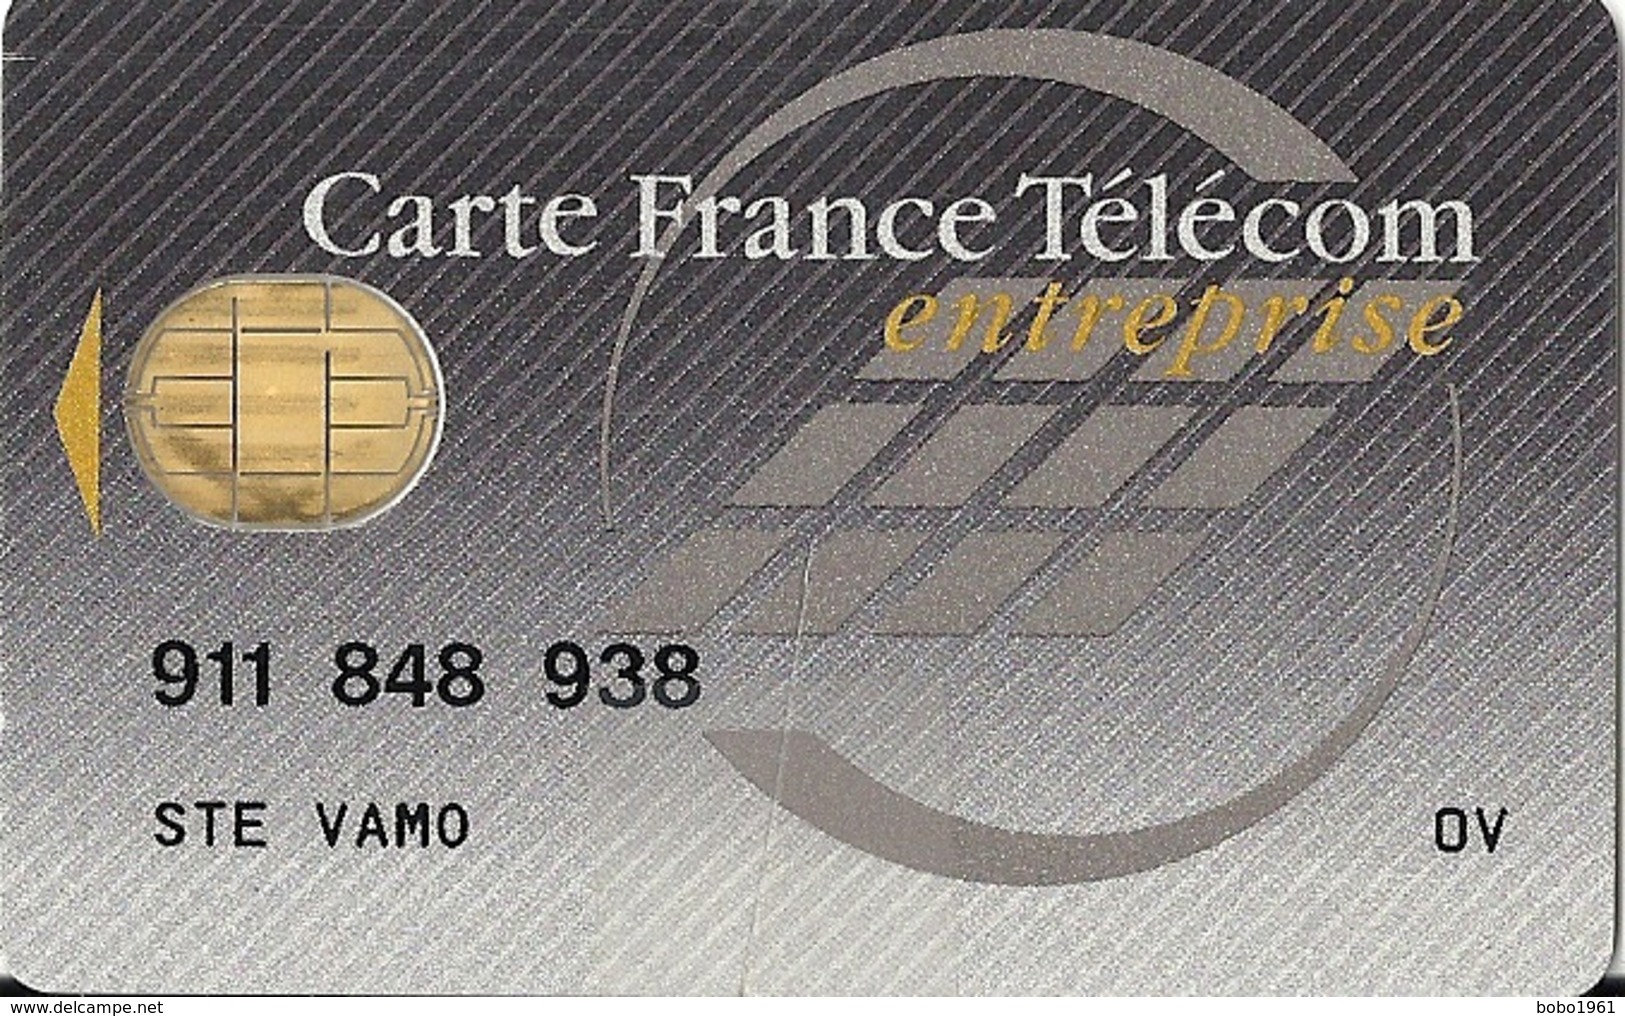 CARTE FRANCE TELECOM ENTREPRISE - STE VAMO - Material